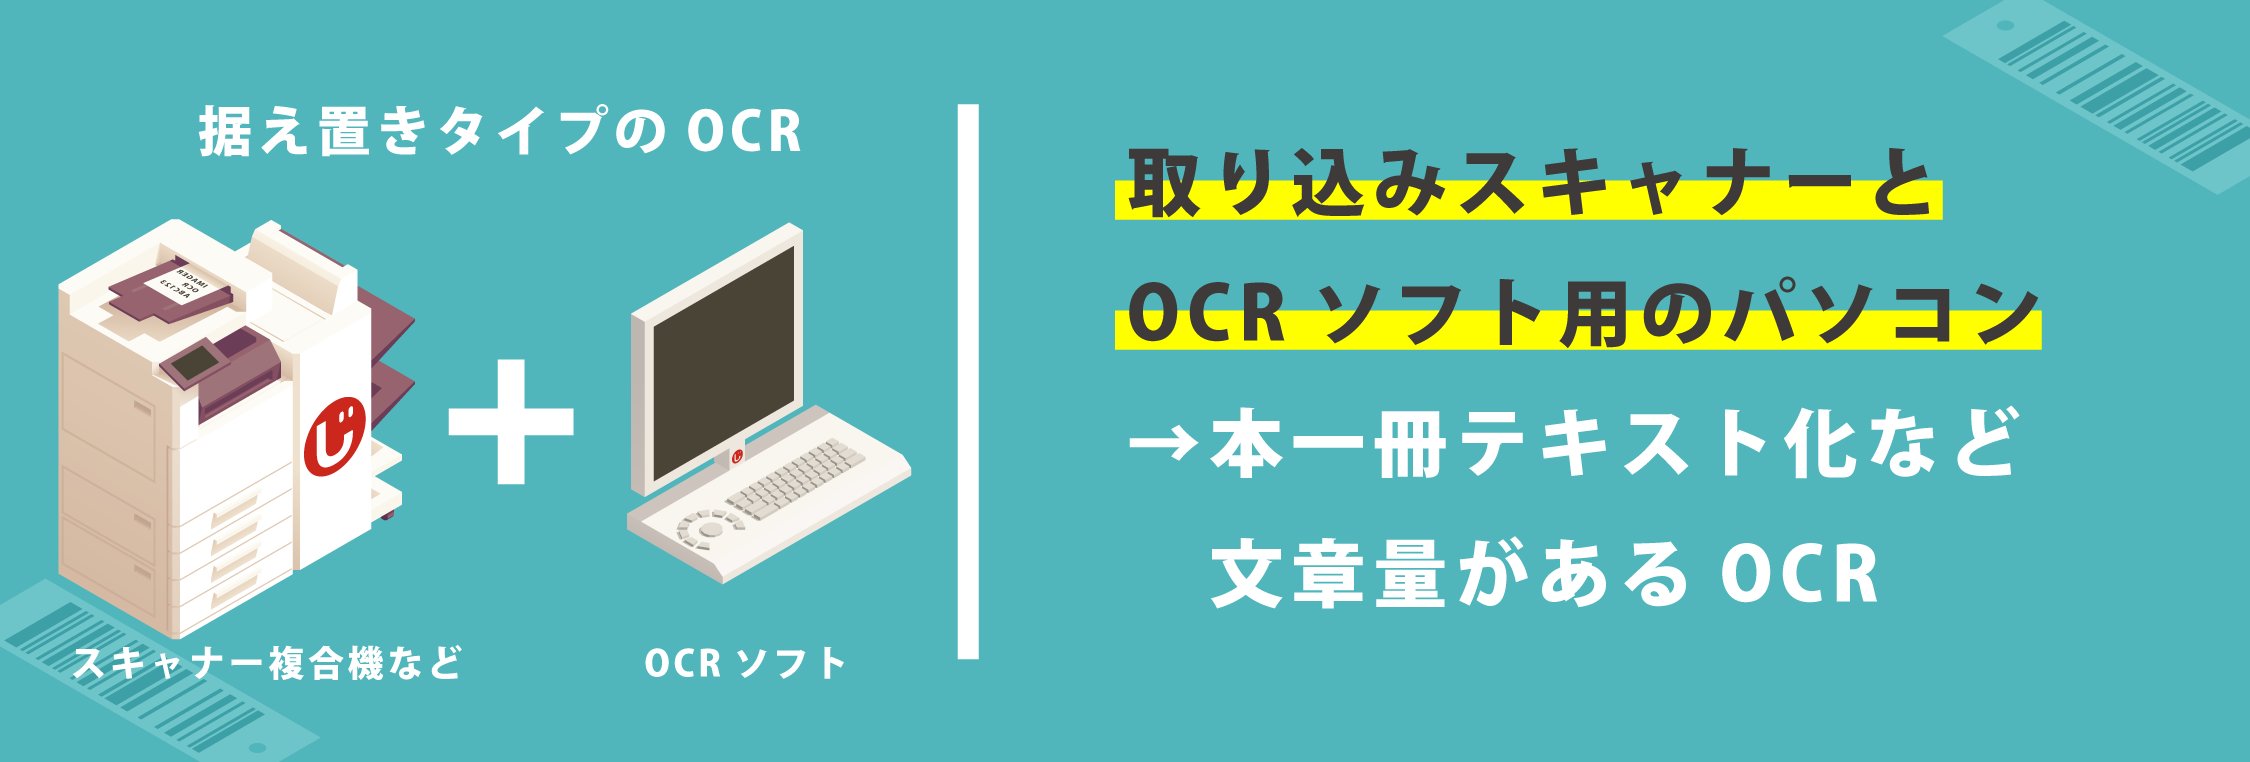 ocr_history